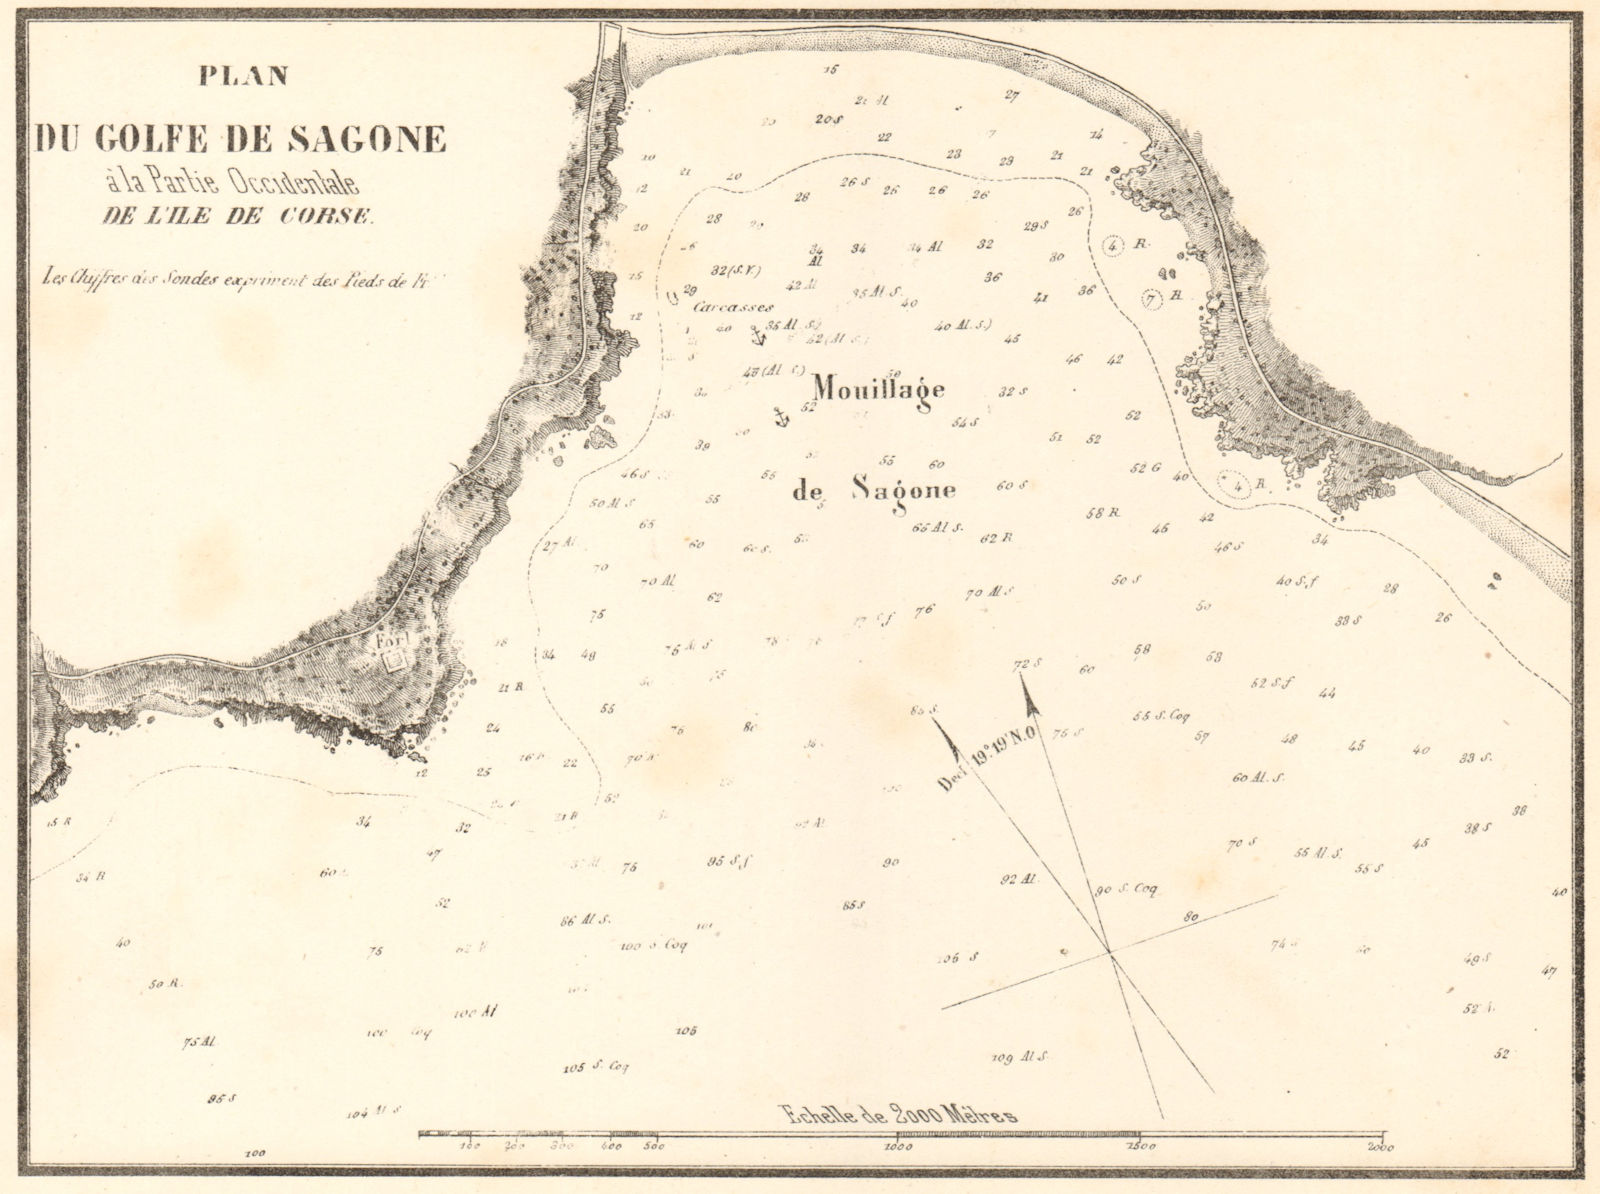 Plan du Golfe de Sagone. Corse Corsica. GAUTTIER 1851 old antique map chart